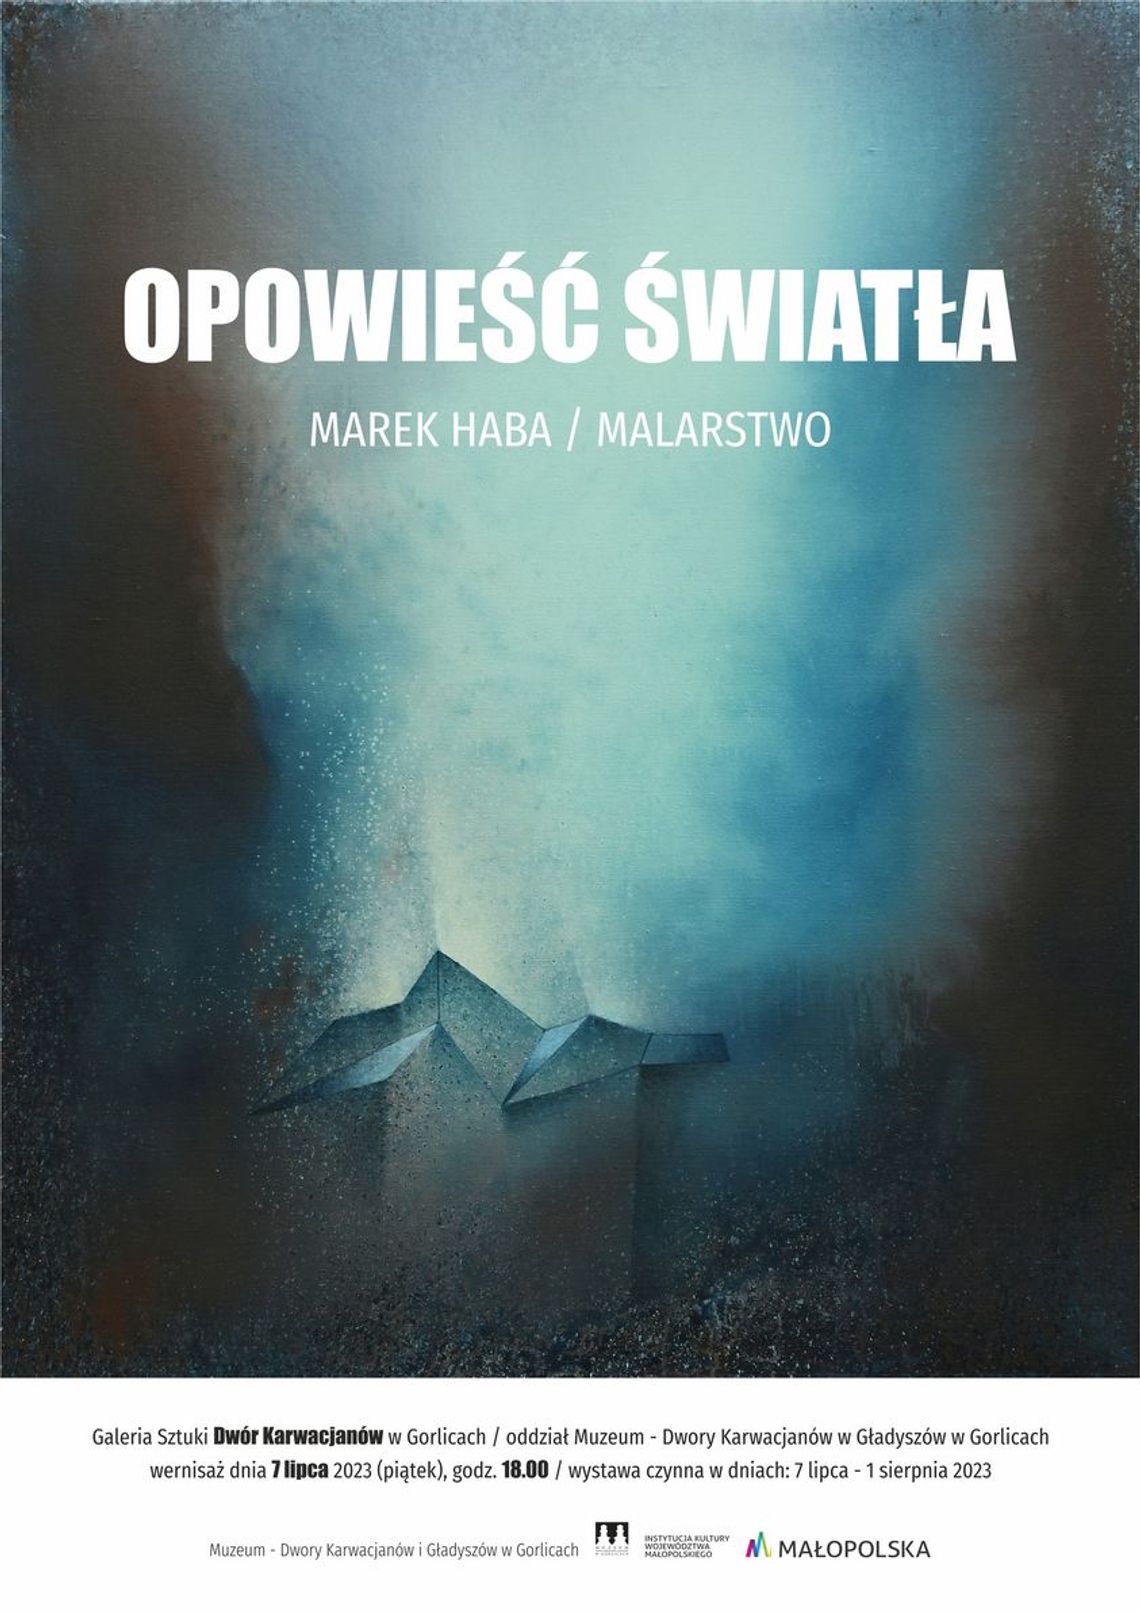 OPOWIEŚĆ ŚWIATŁA - MAREK HABA / WYSTAWA MALARSTWA | halogorlice.info